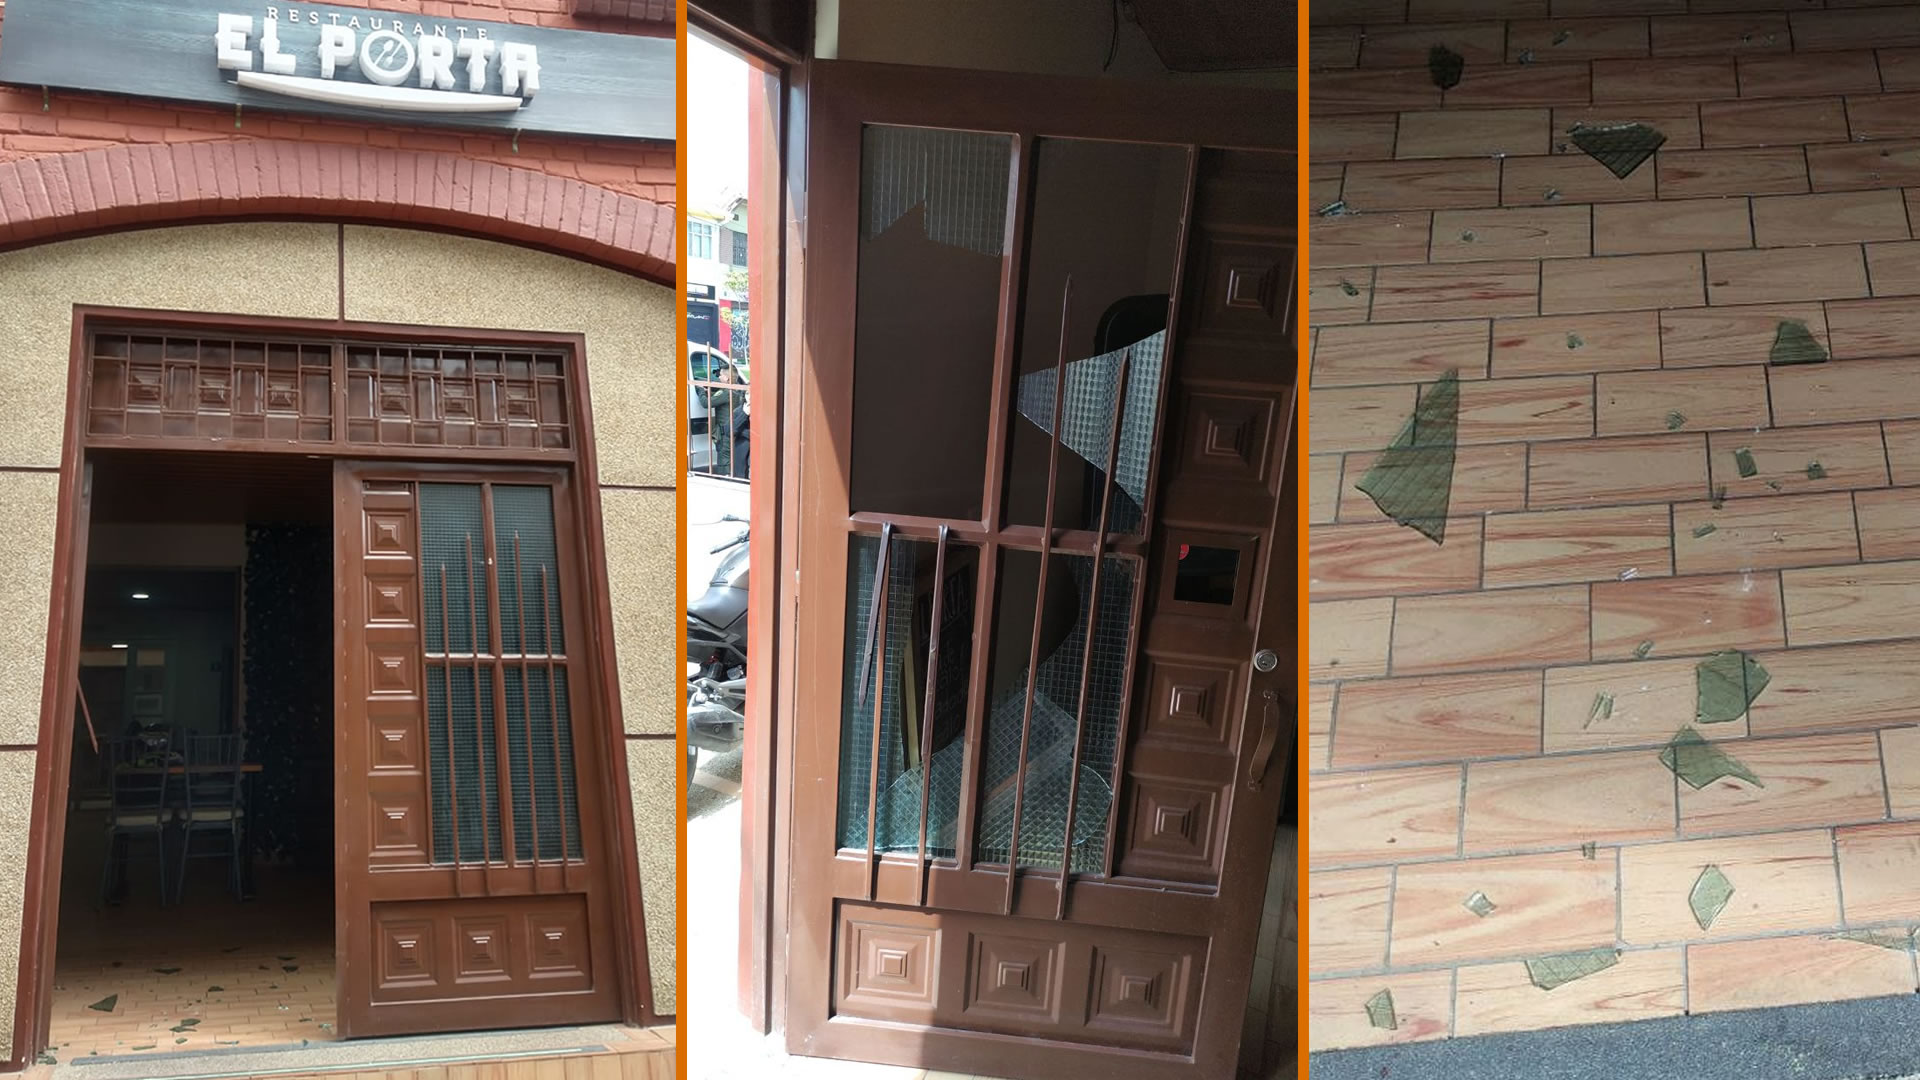 Así quedaron las ventas de la puerta del restaurante El Porta de excombatientes de las Farc luego del ataque.